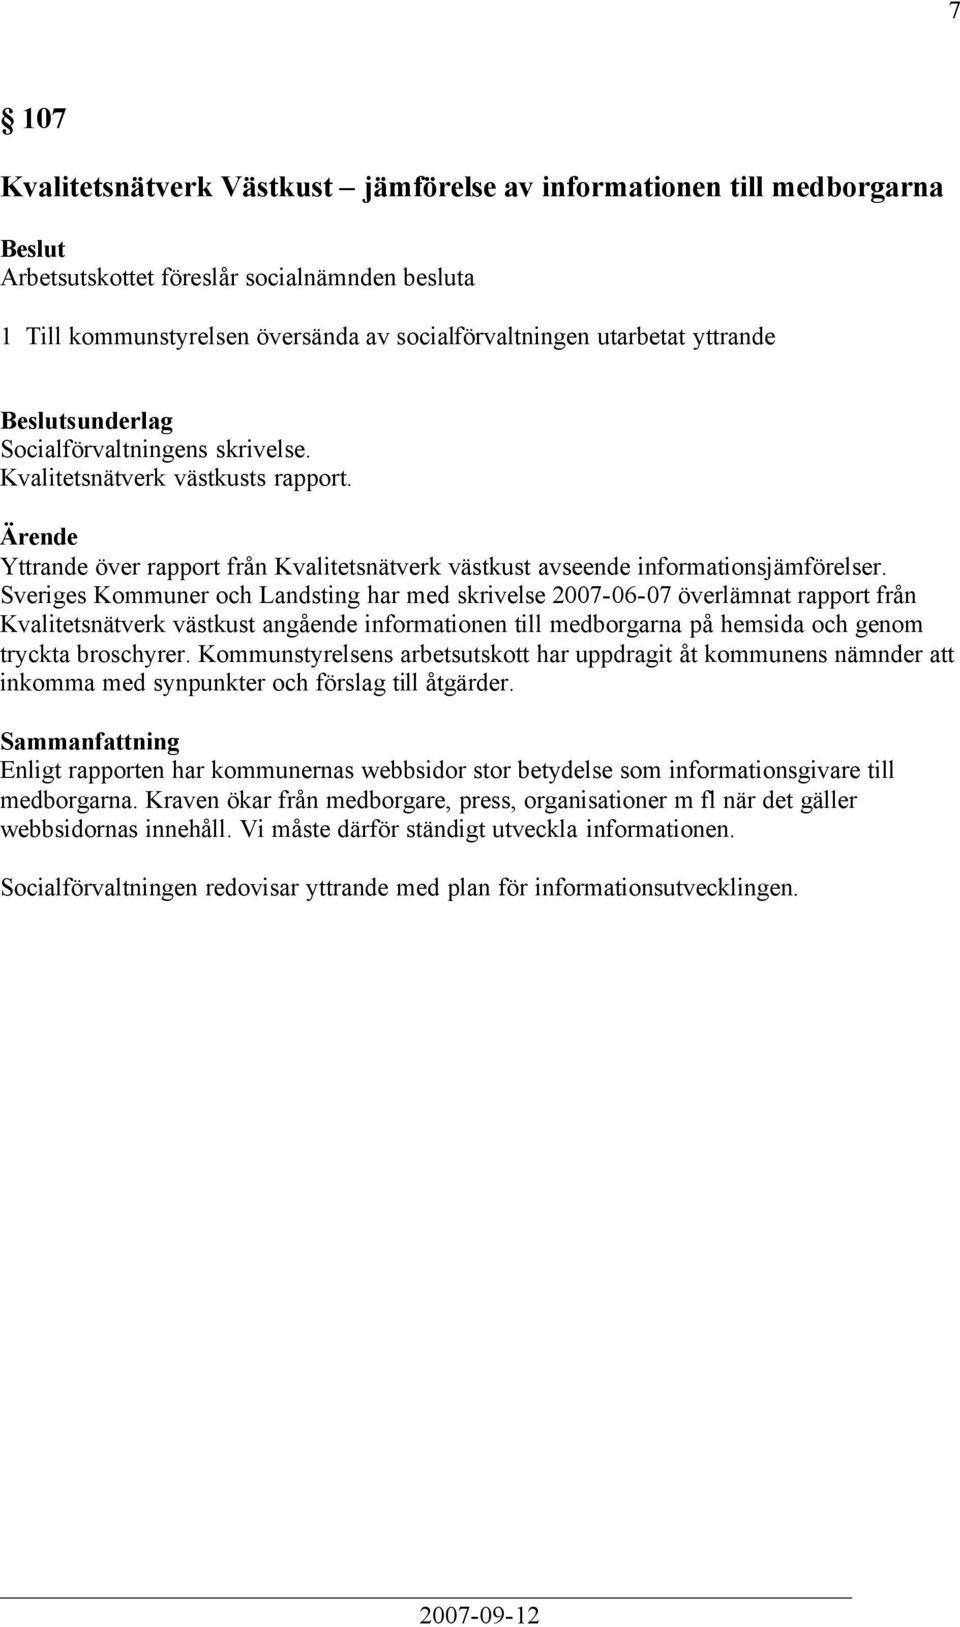 Sveriges Kommuner och Landsting har med skrivelse 2007-06-07 överlämnat rapport från Kvalitetsnätverk västkust angående informationen till medborgarna på hemsida och genom tryckta broschyrer.